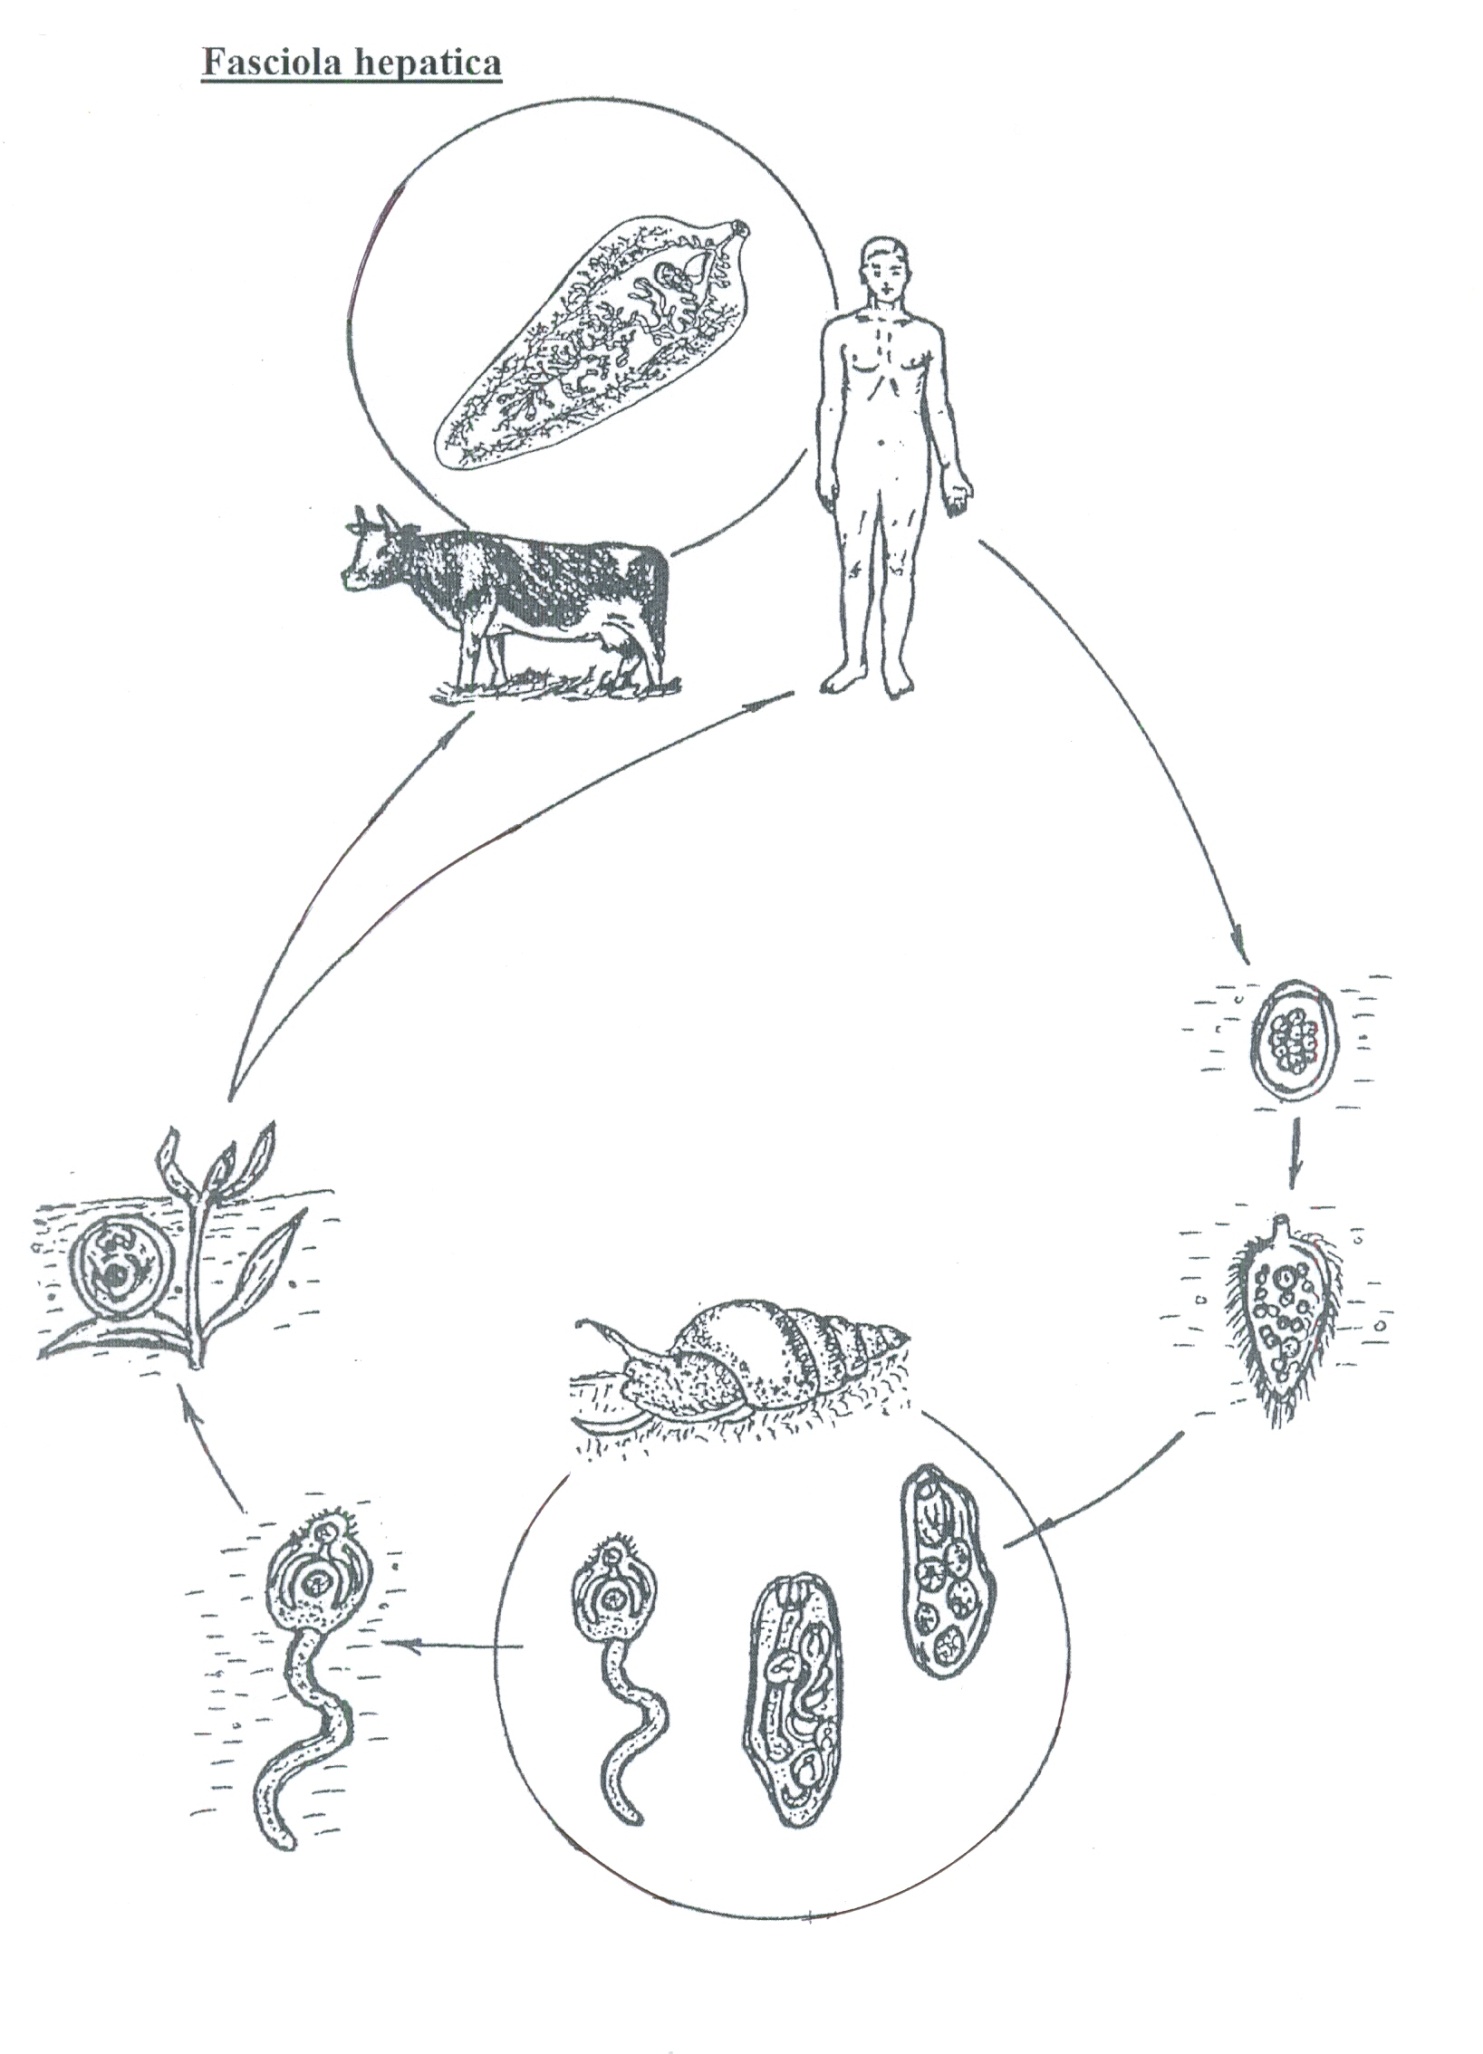 Жизненный цикл легочного. Жизненный цикл Fasciola hepatica схема. Жизненный цикл печеночного сосальщика. Фасциола обыкновенная жизненный цикл. Схема жизненного цикла Fasciola hepatica таблица.